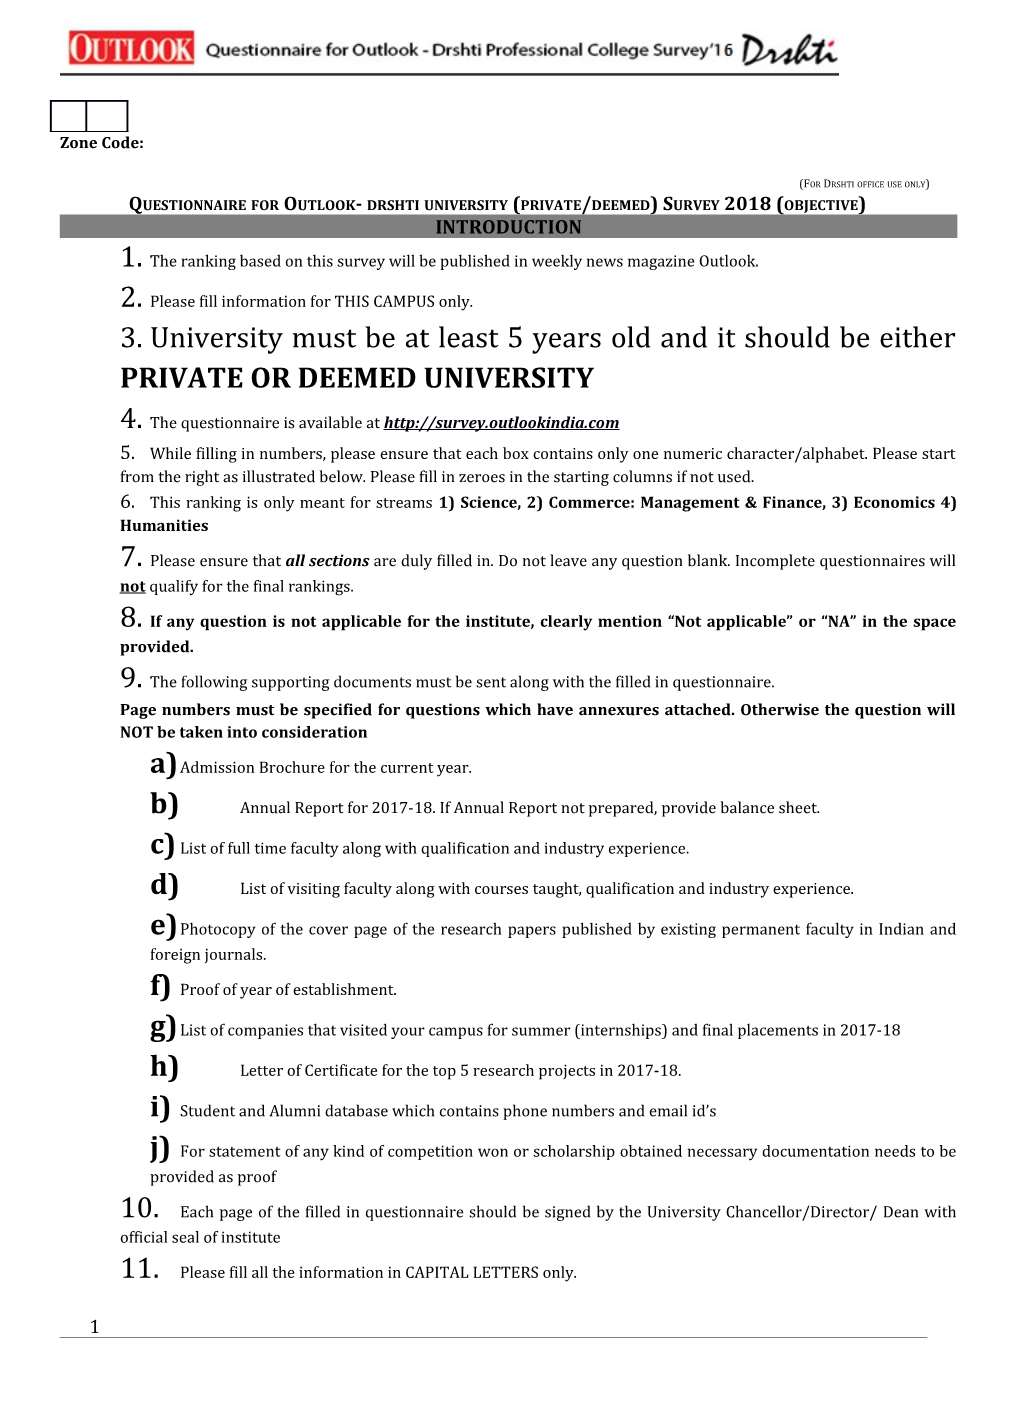 Questionnaire for Outlook- Drshti University (Private/Deemed) Survey 2018 (Objective)